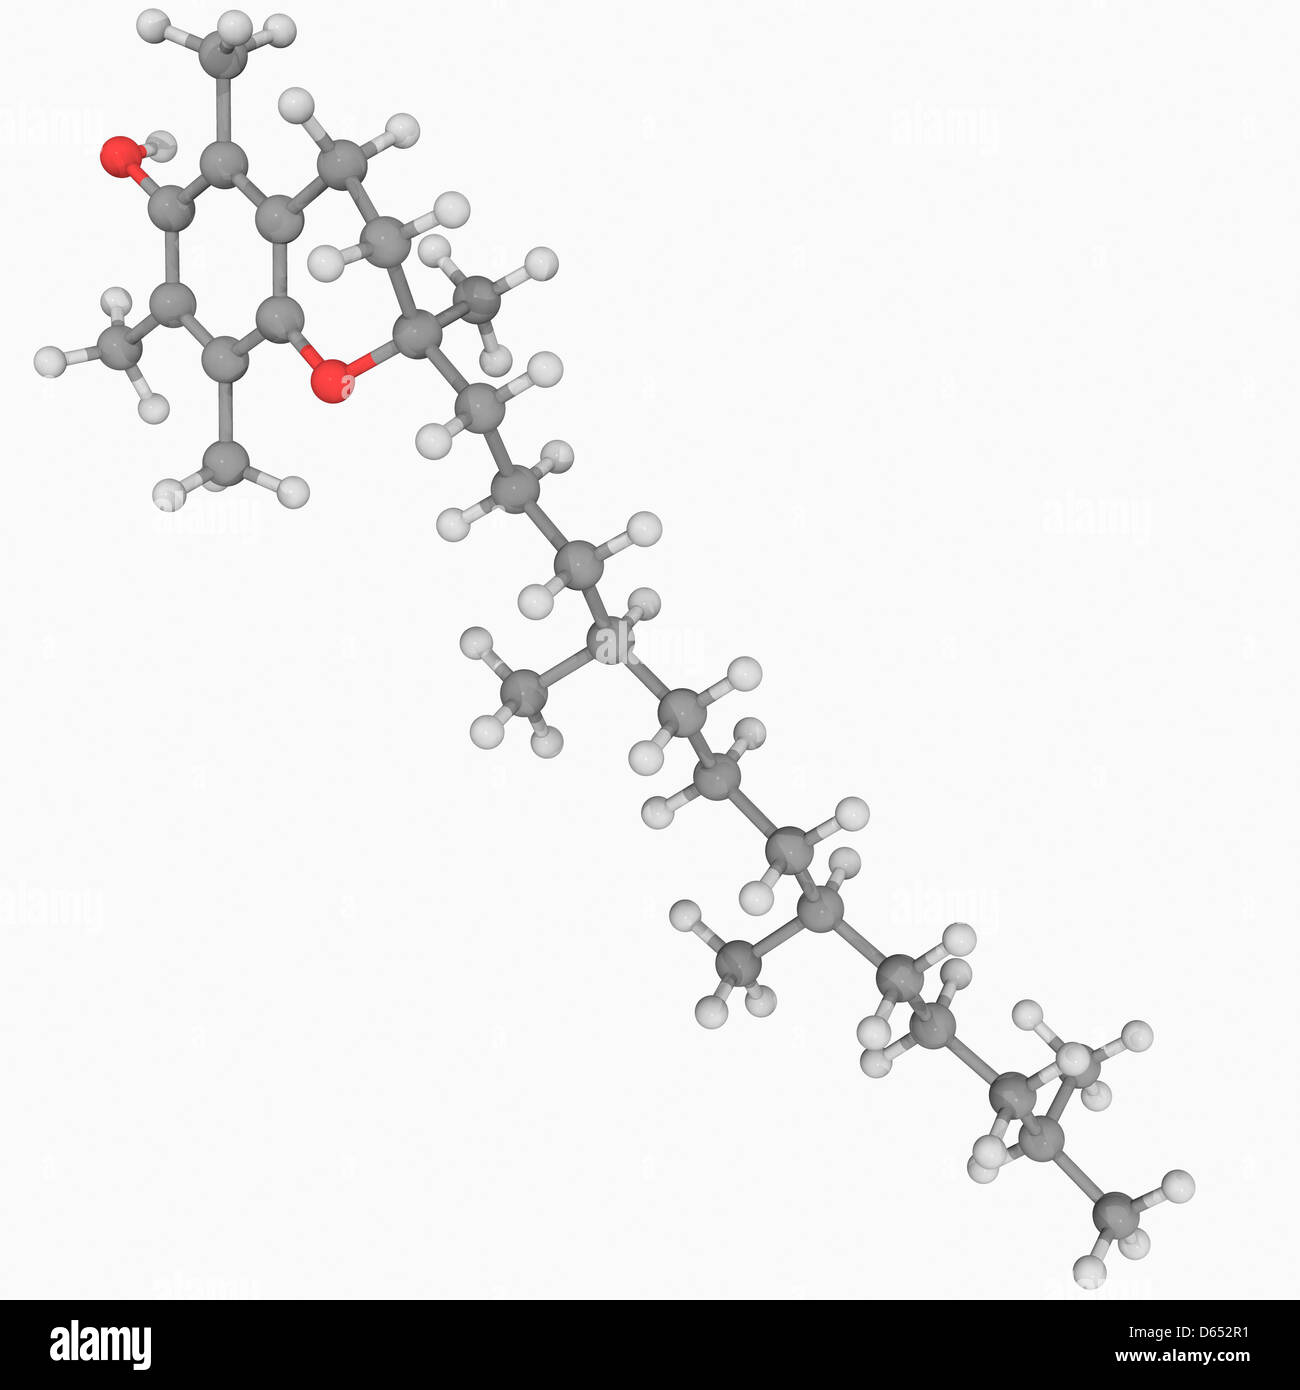 Vitamin E molecule Stock Photo